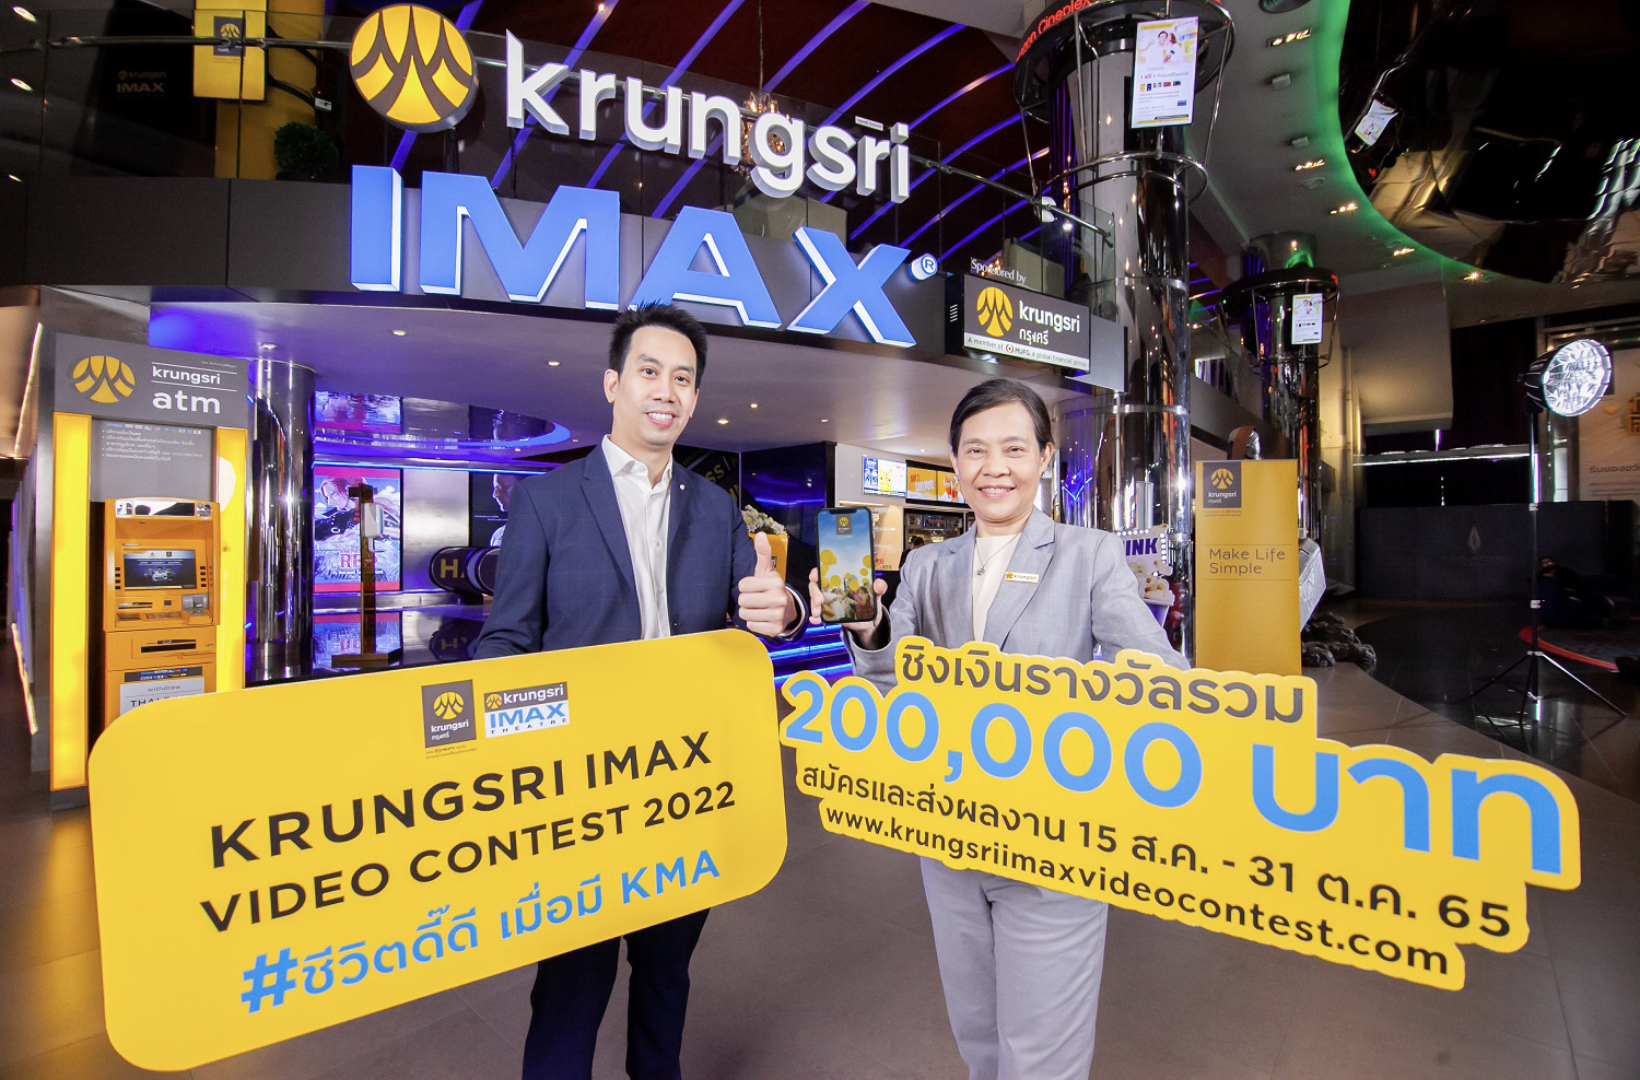 กรุงศรี จับมือ เมเจอร์ ซีนีเพล็กซ์ จัดประกวดคลิปวิดีโอ “Krungsri IMAX Video Contest 2022” หัวข้อ “ชีวิตดี๊ดี เมื่อมี KMA”